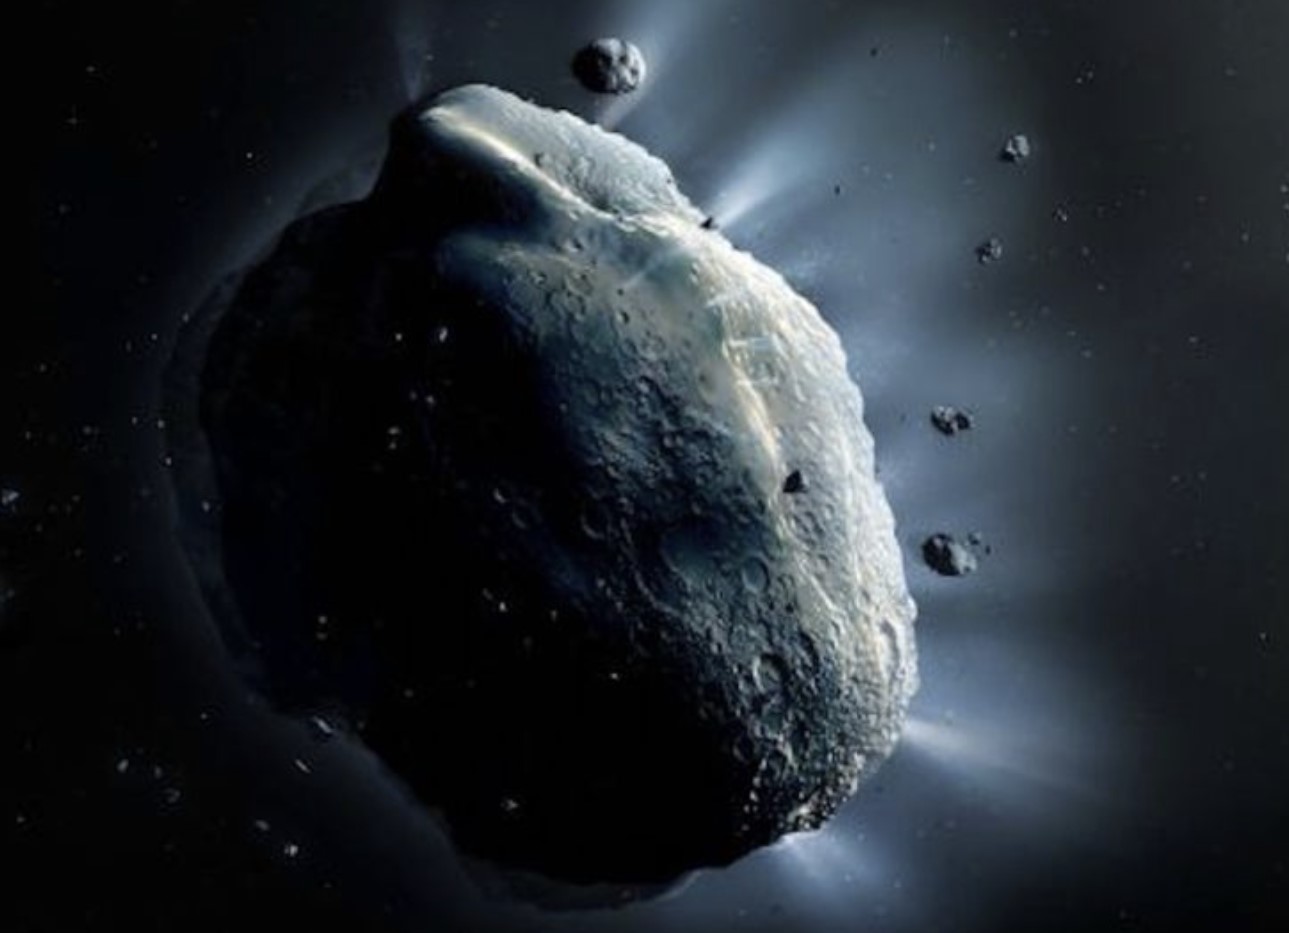 Огромный астероид, в четыре раза превышающий размер Эмпайр-стейт-билдинг, приближается к Земле